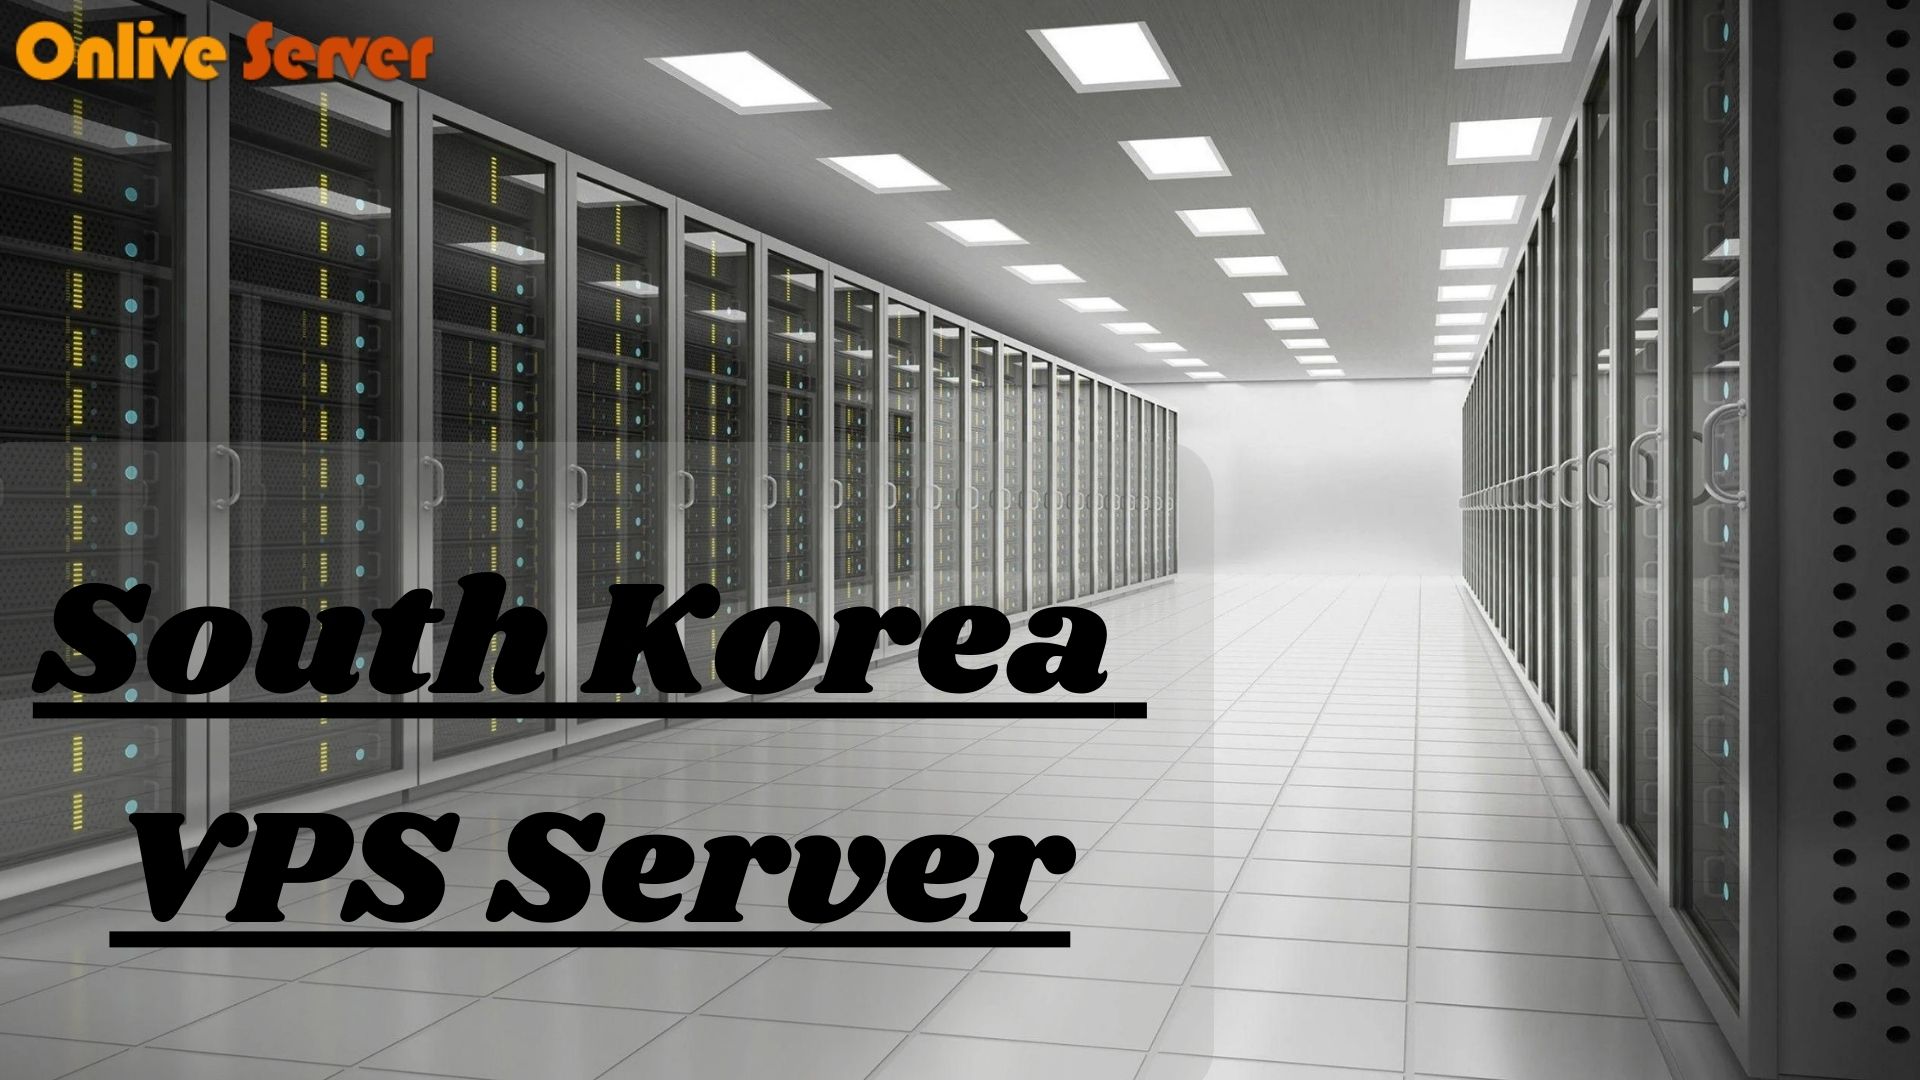 South Korea VPS Server (2)